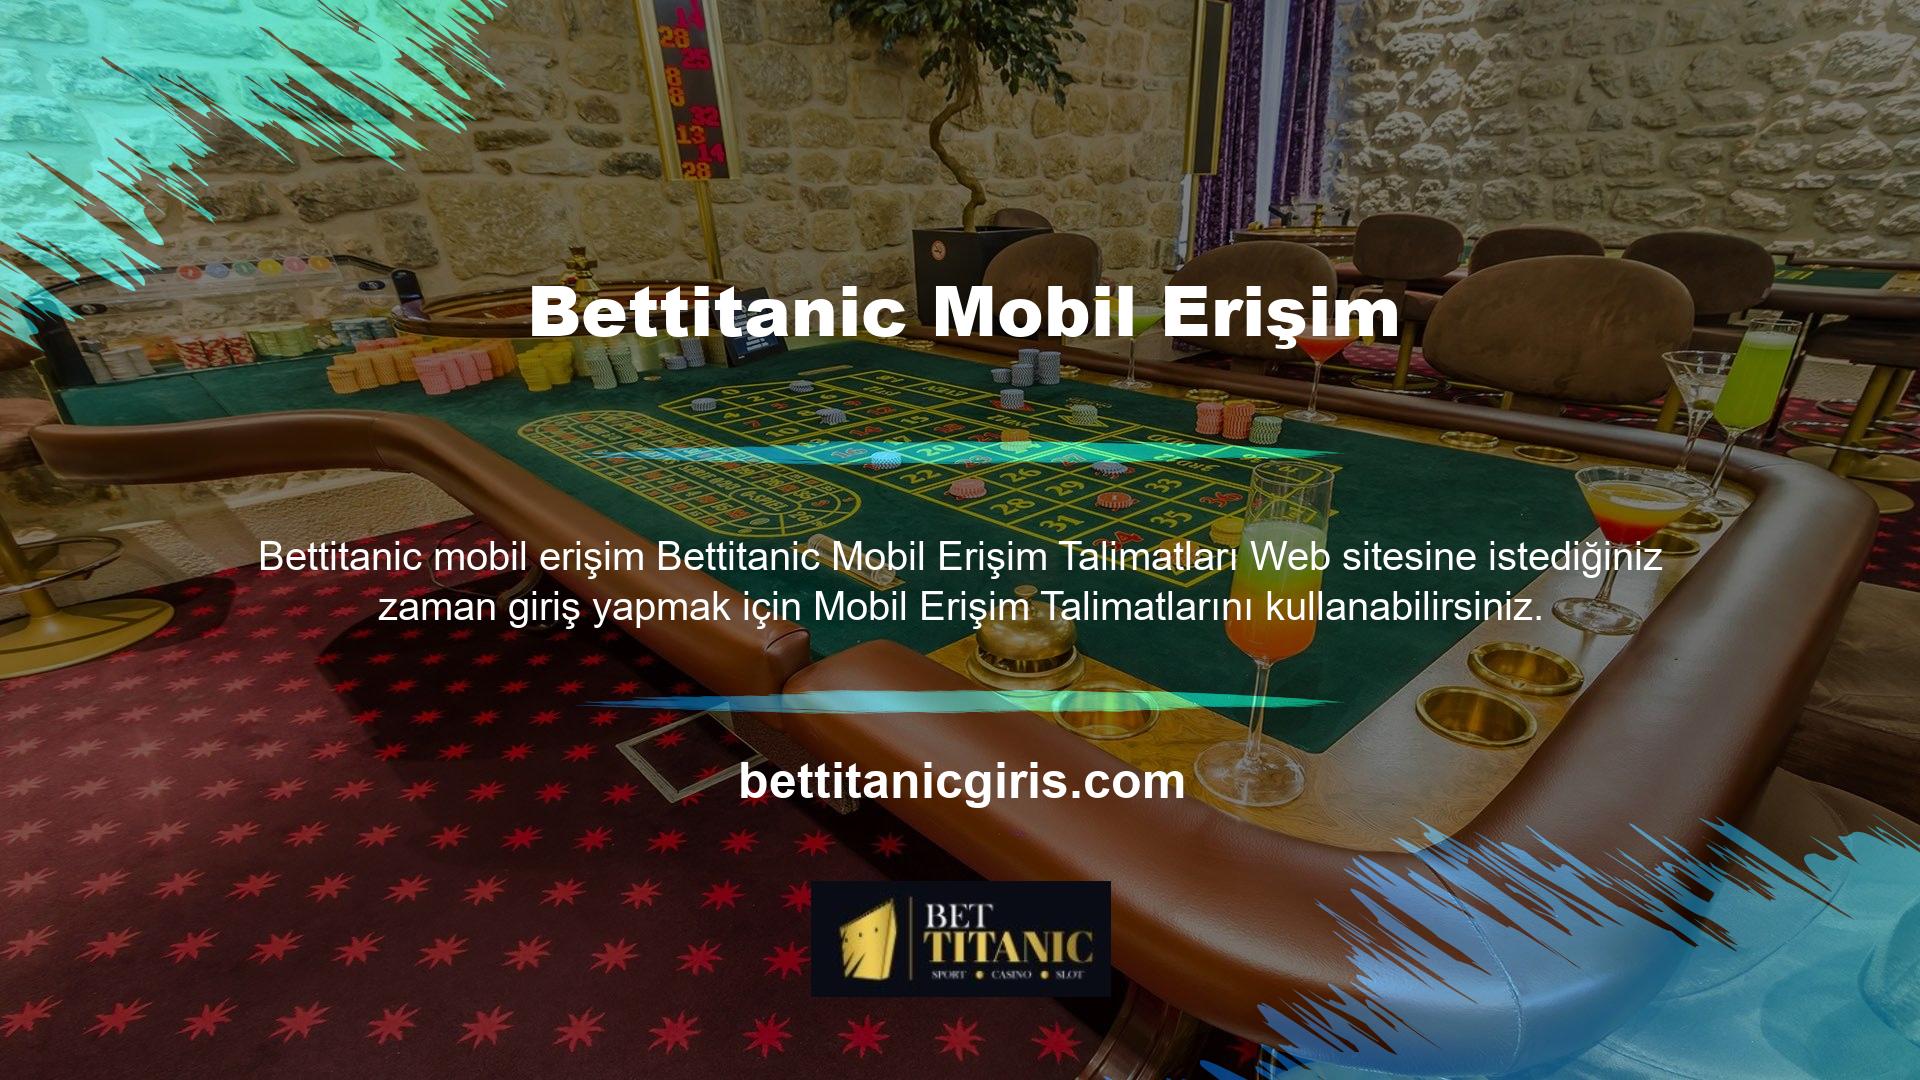 Bettitanic mobil erişim aşamasında en basit sistemlerden birini sunuyor